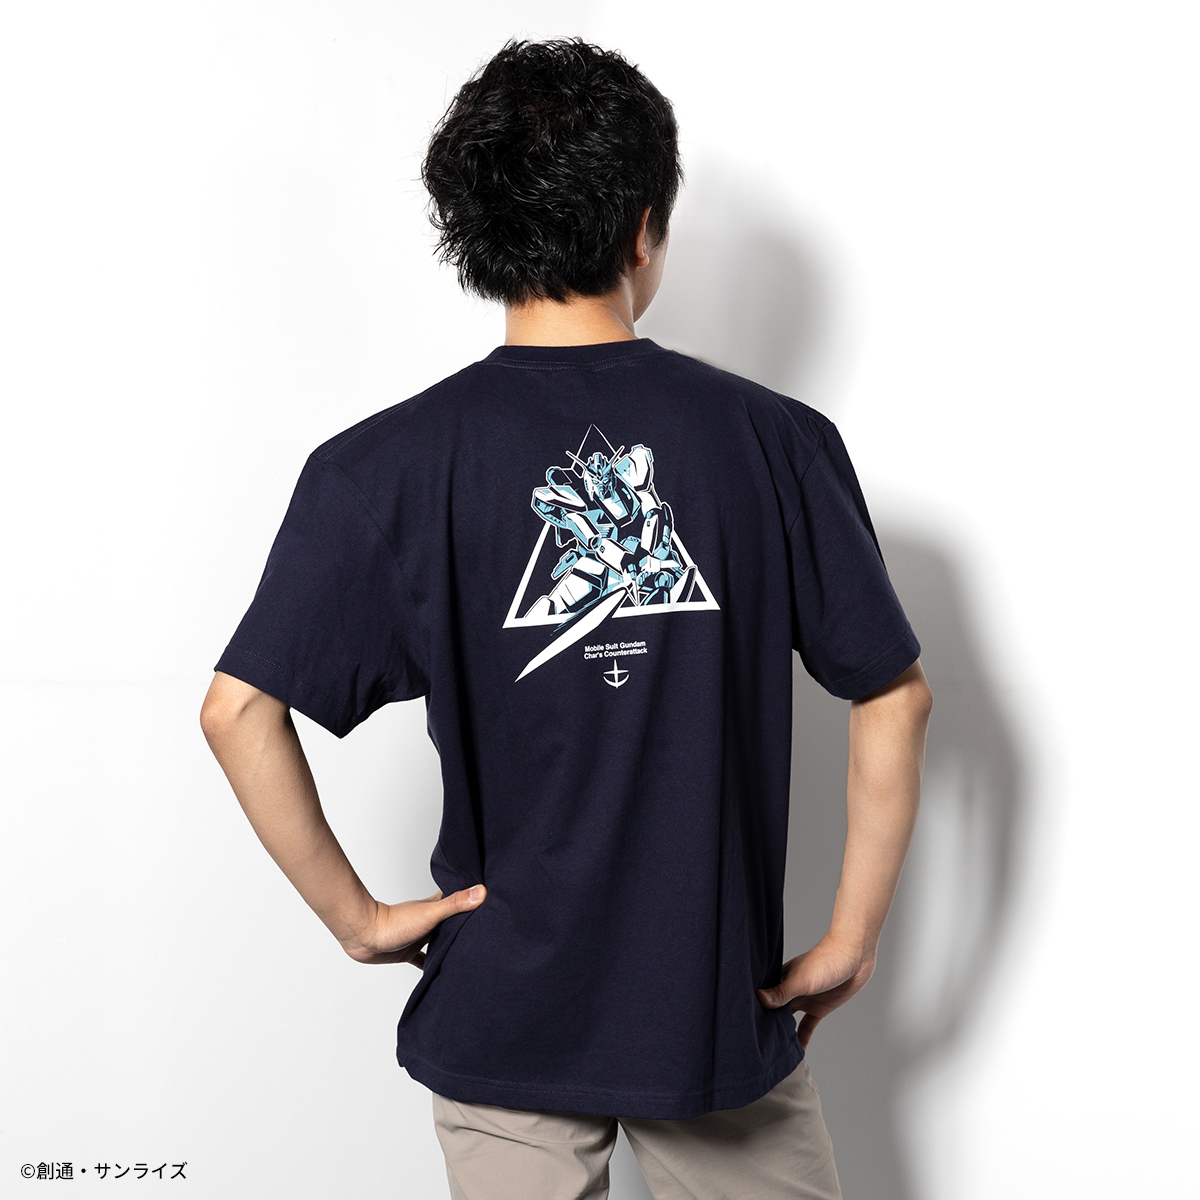 『機動戦士ガンダム 逆襲のシャア 』23SS新作アパレルコレクション Tシャツ、ポロシャツなど7アイテムを展開！